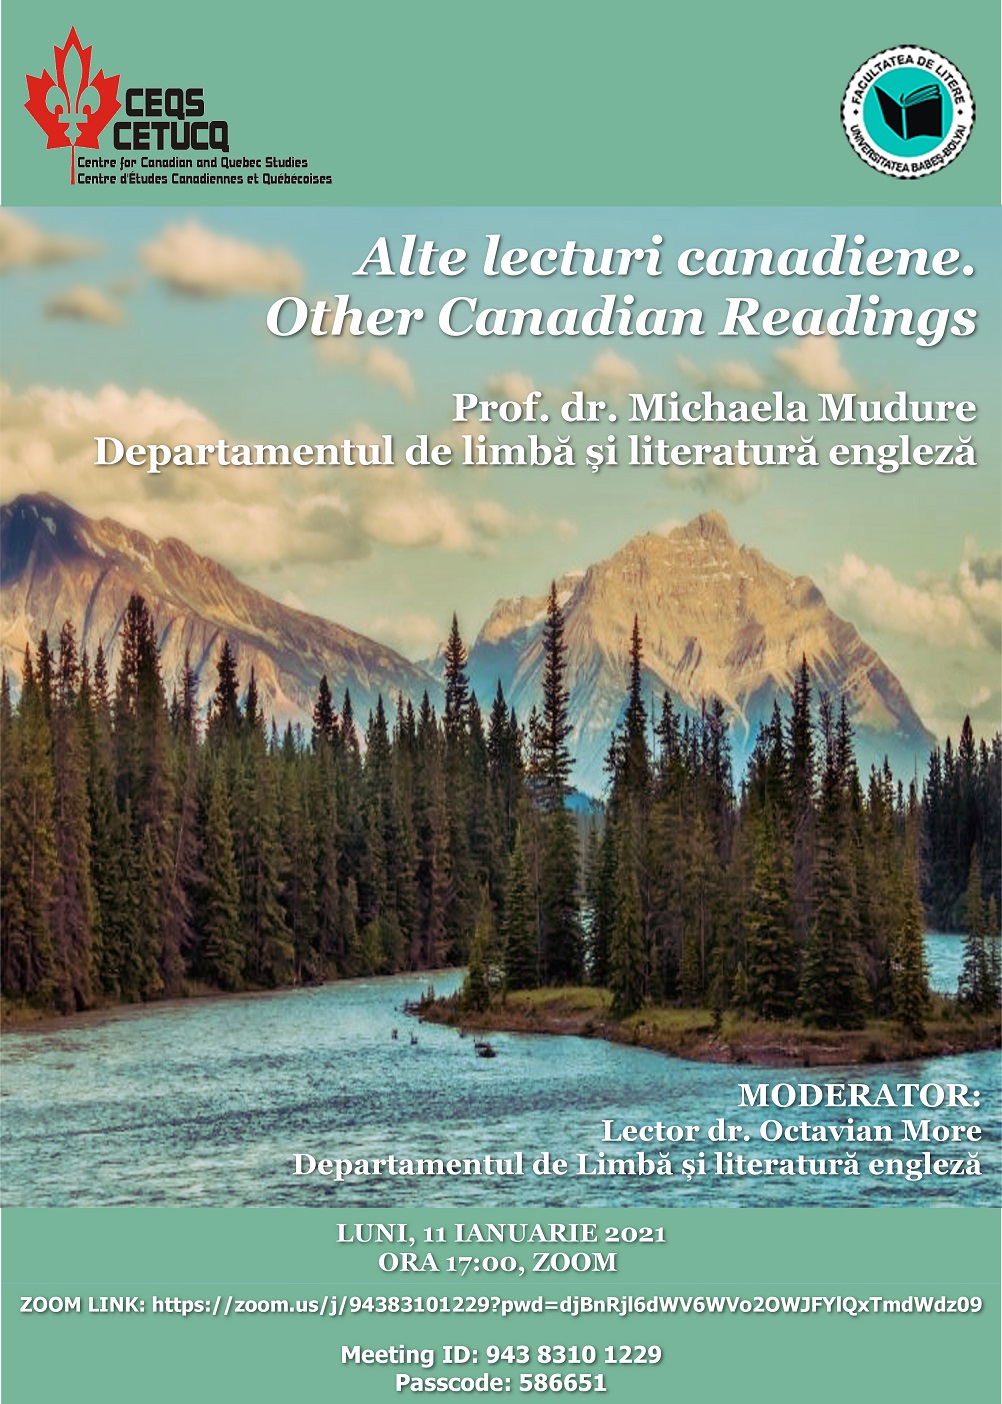 Lansare de carte la Centrul de Studii Canadiene (CEQS/CETUCQ)